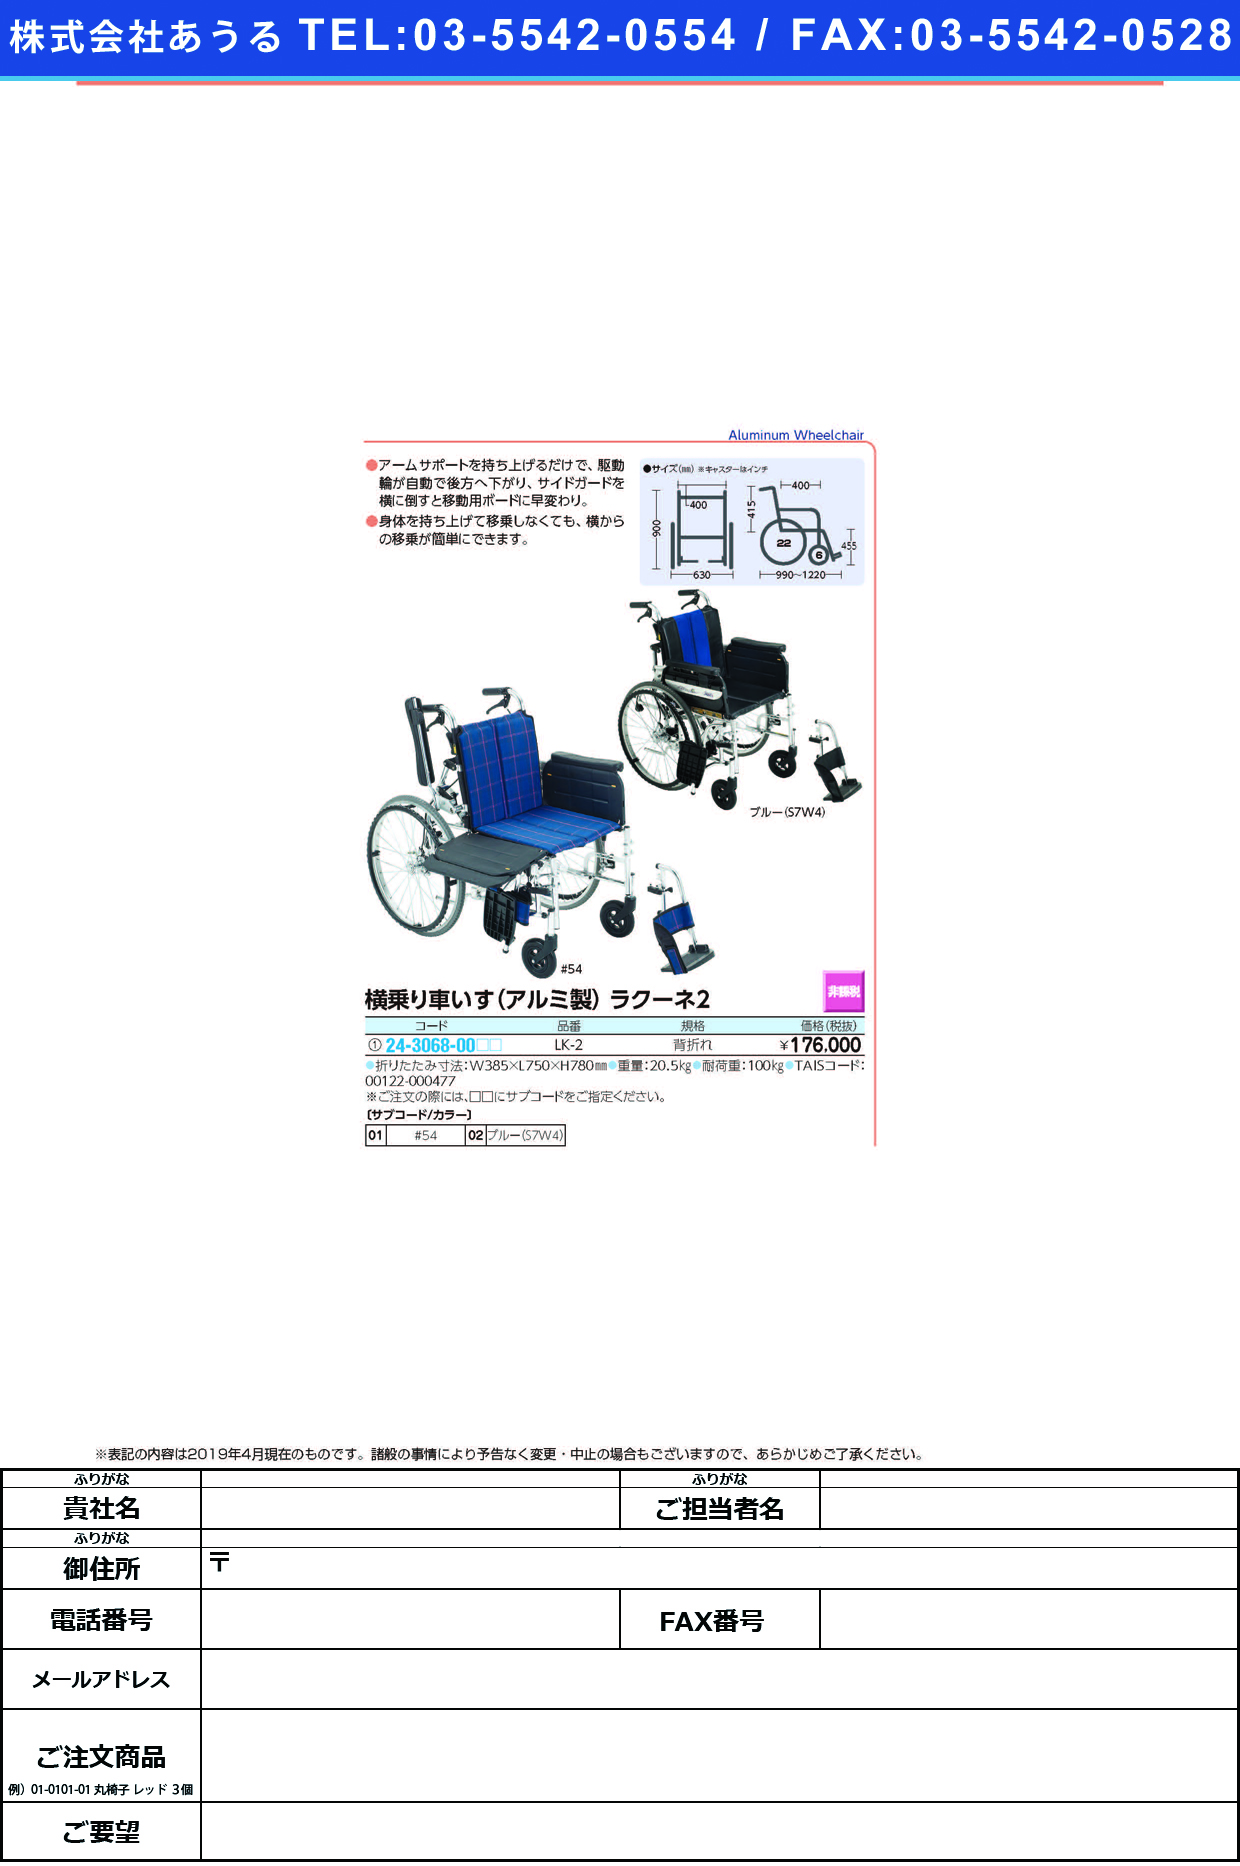 (24-3068-00)横乗り車いすラクーネ２ LK-2 ﾖｺﾉﾘｸﾙﾏｲｽﾗｸｰﾈ2 ブルー（Ｓ７Ｗ４）(ミキ)【1台単位】【2019年カタログ商品】